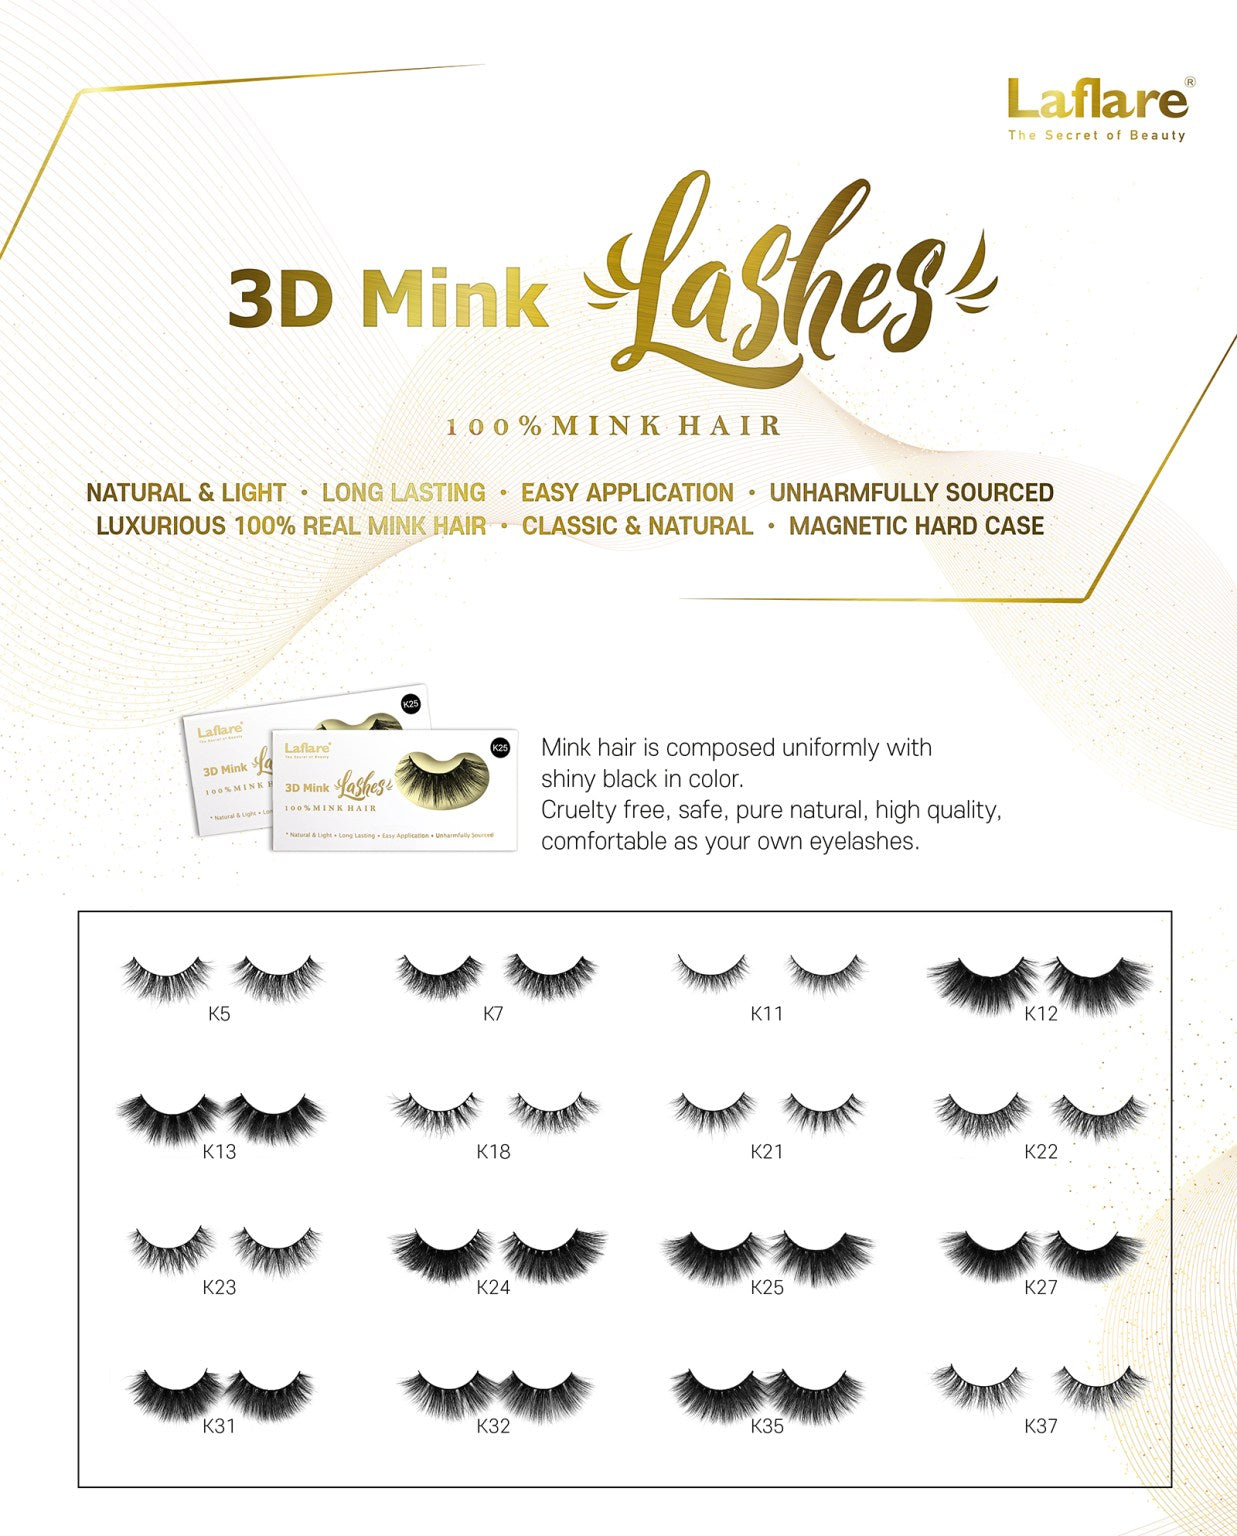 LAFLARE 3D FAUX MINK LASHES - K14